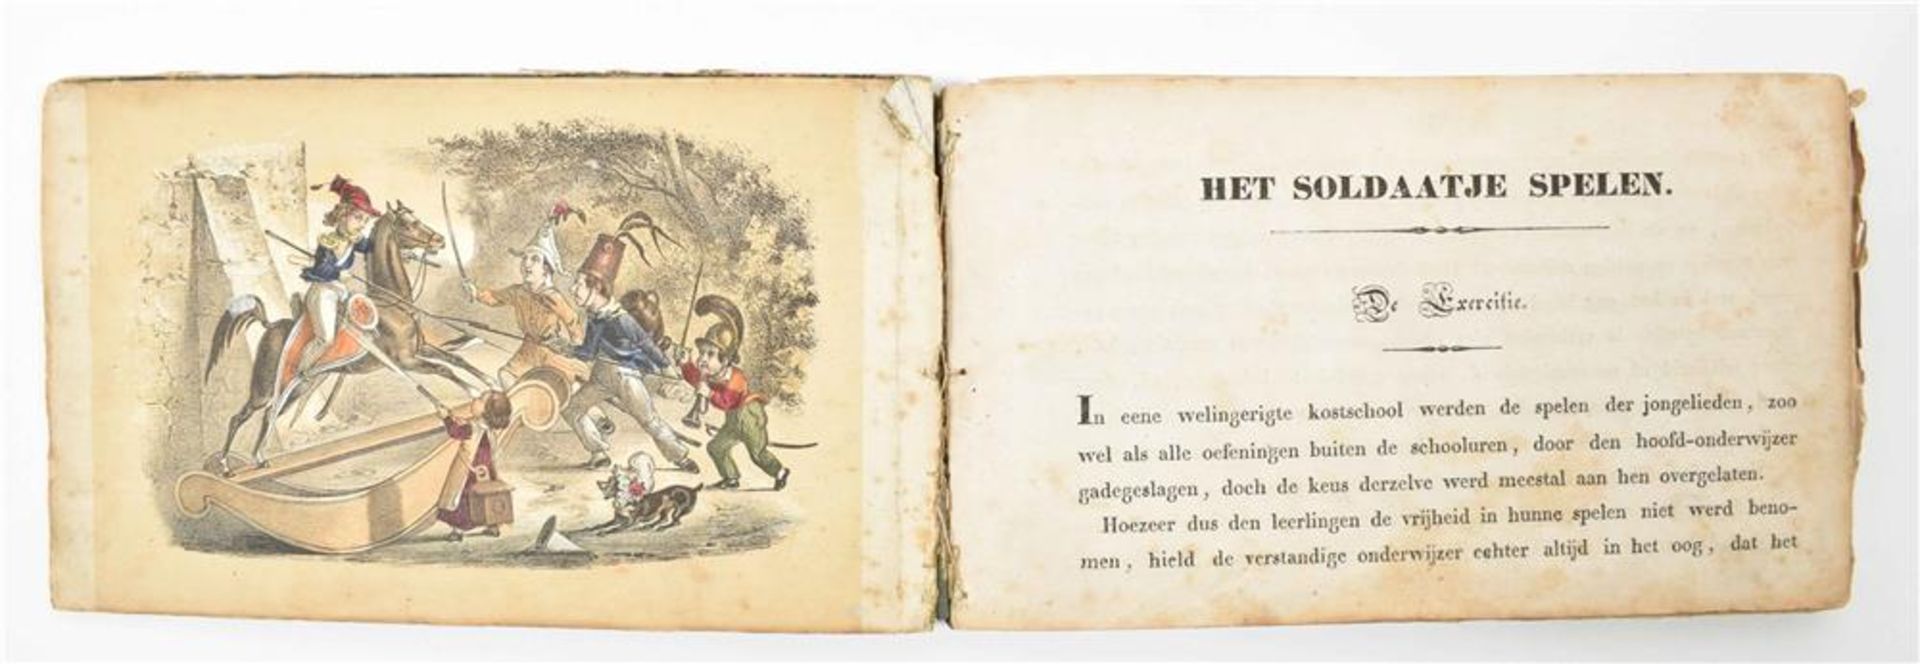 [Dutch children's books] Seven mid nineteenth century Dutch titles: (1) In de speeluren - Image 10 of 10